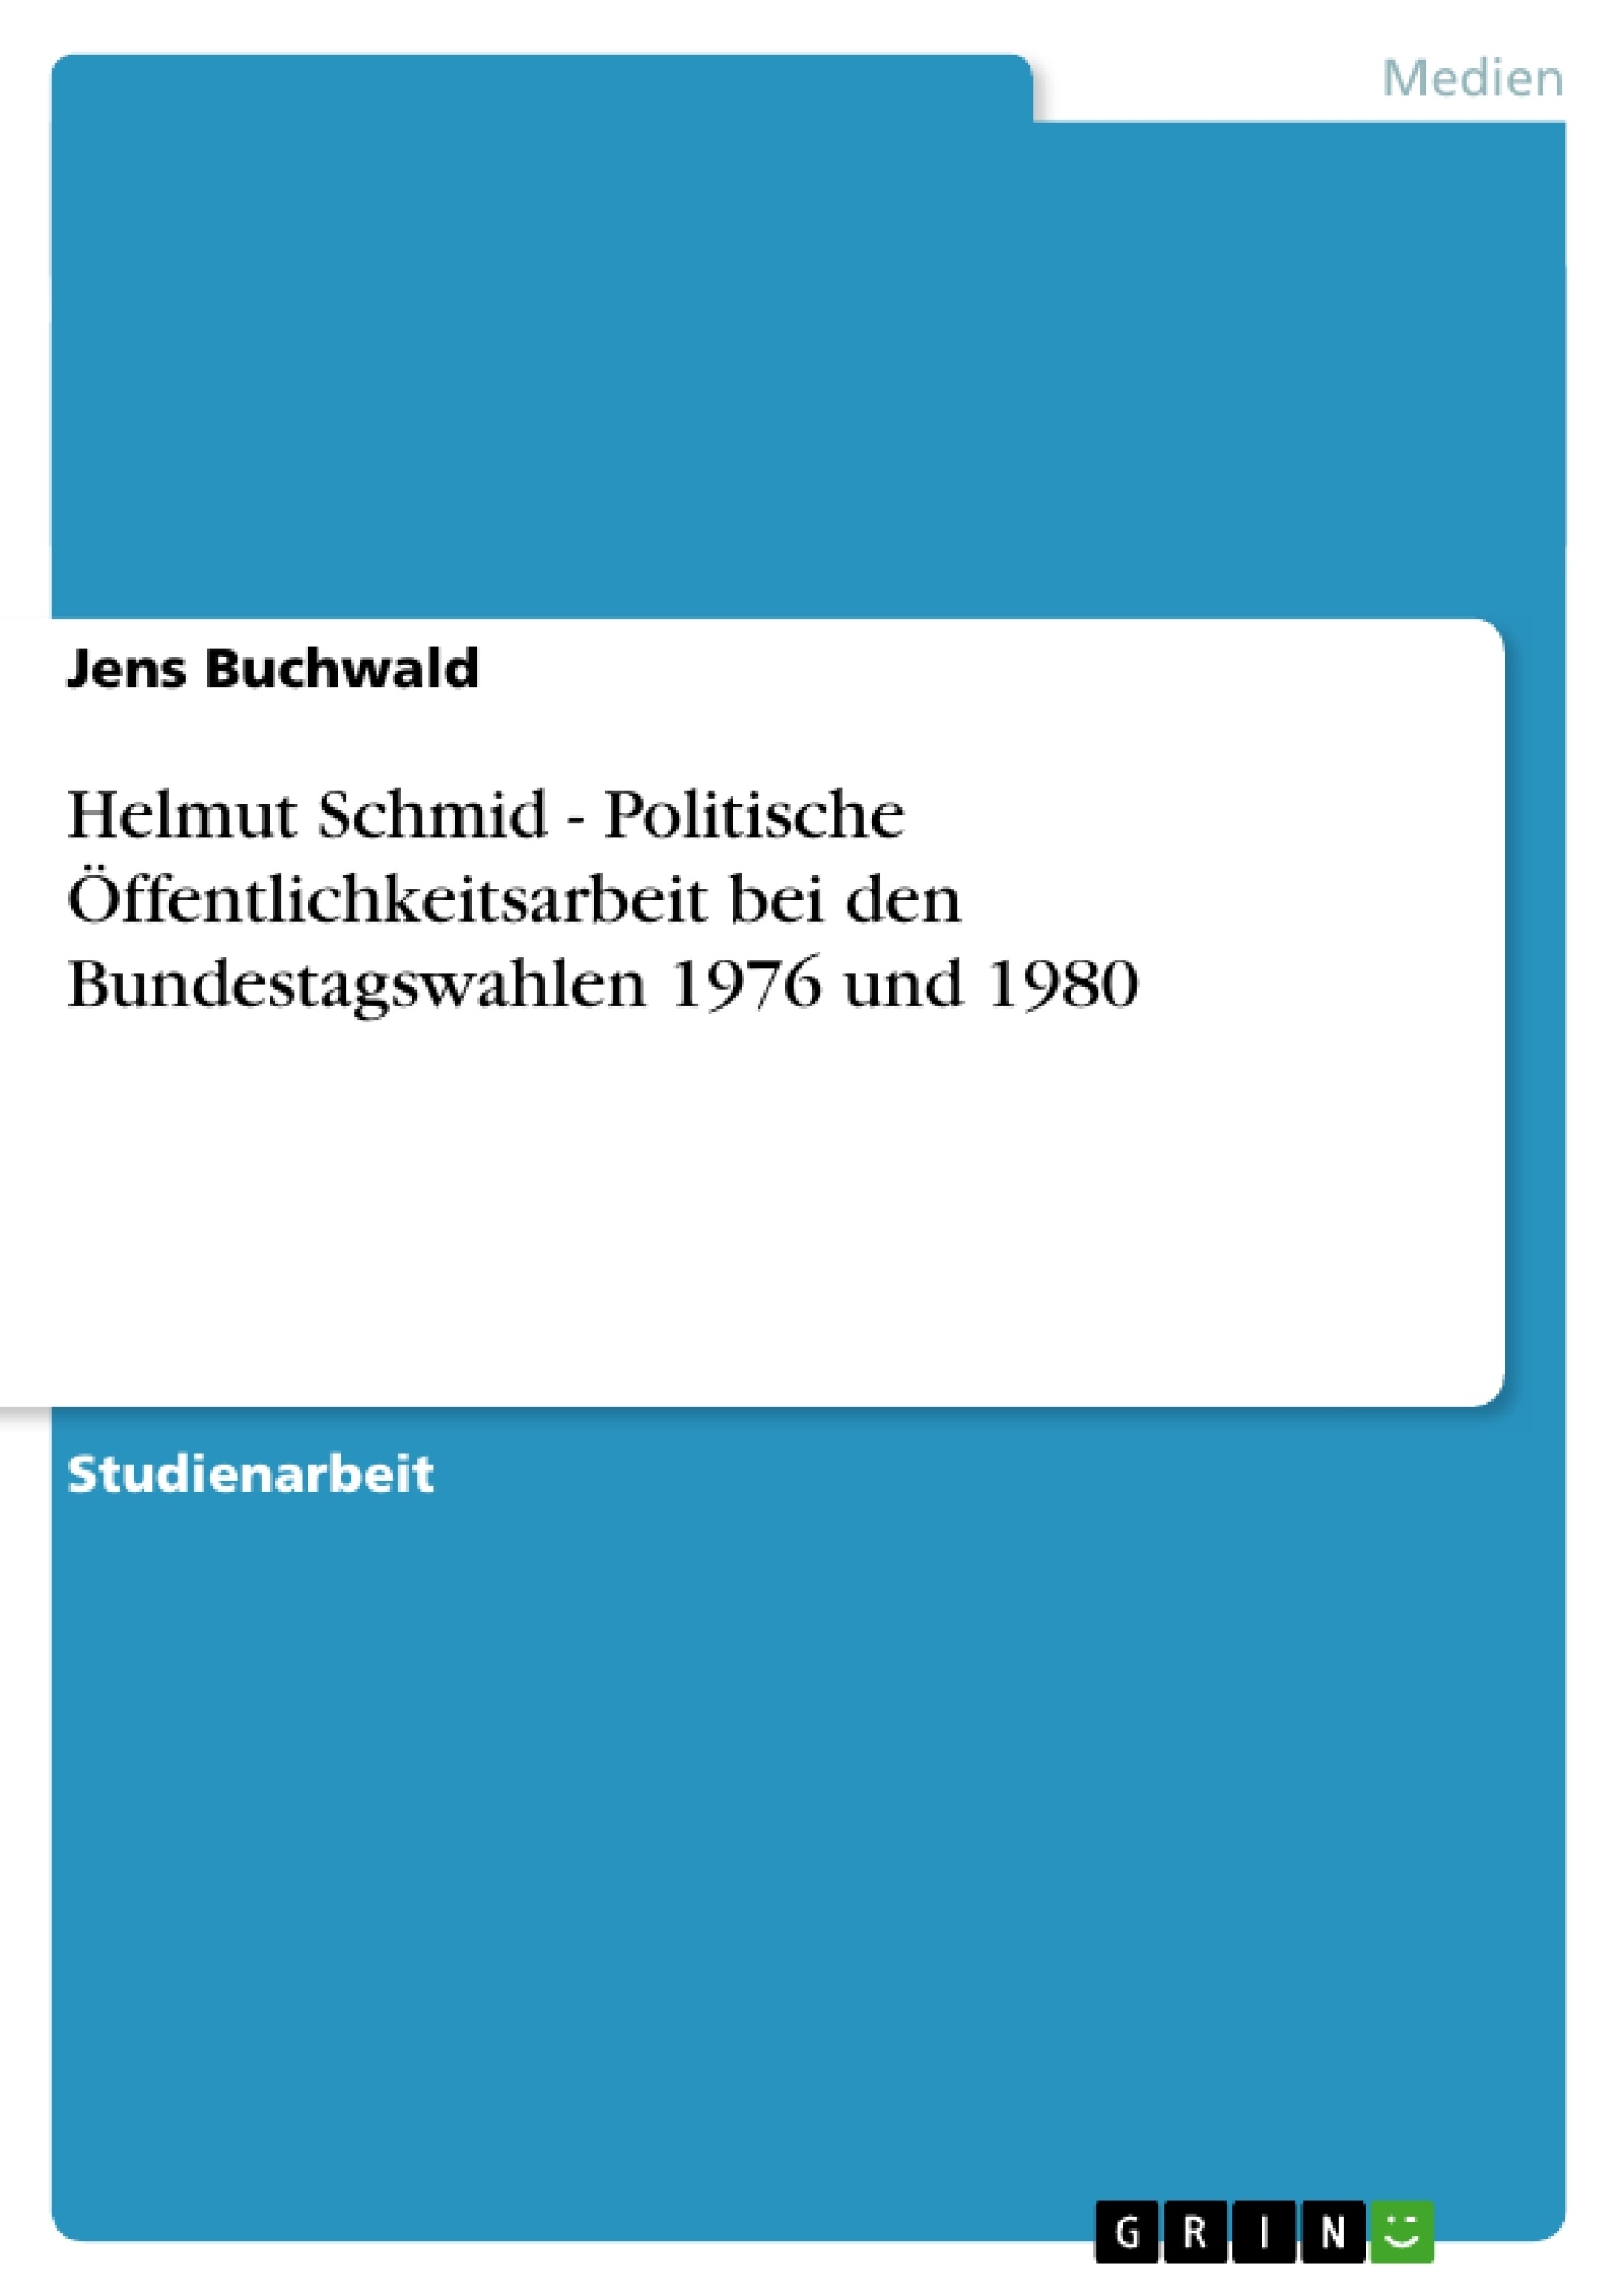 Título: Helmut Schmid - Politische Öffentlichkeitsarbeit bei den Bundestagswahlen 1976 und 1980